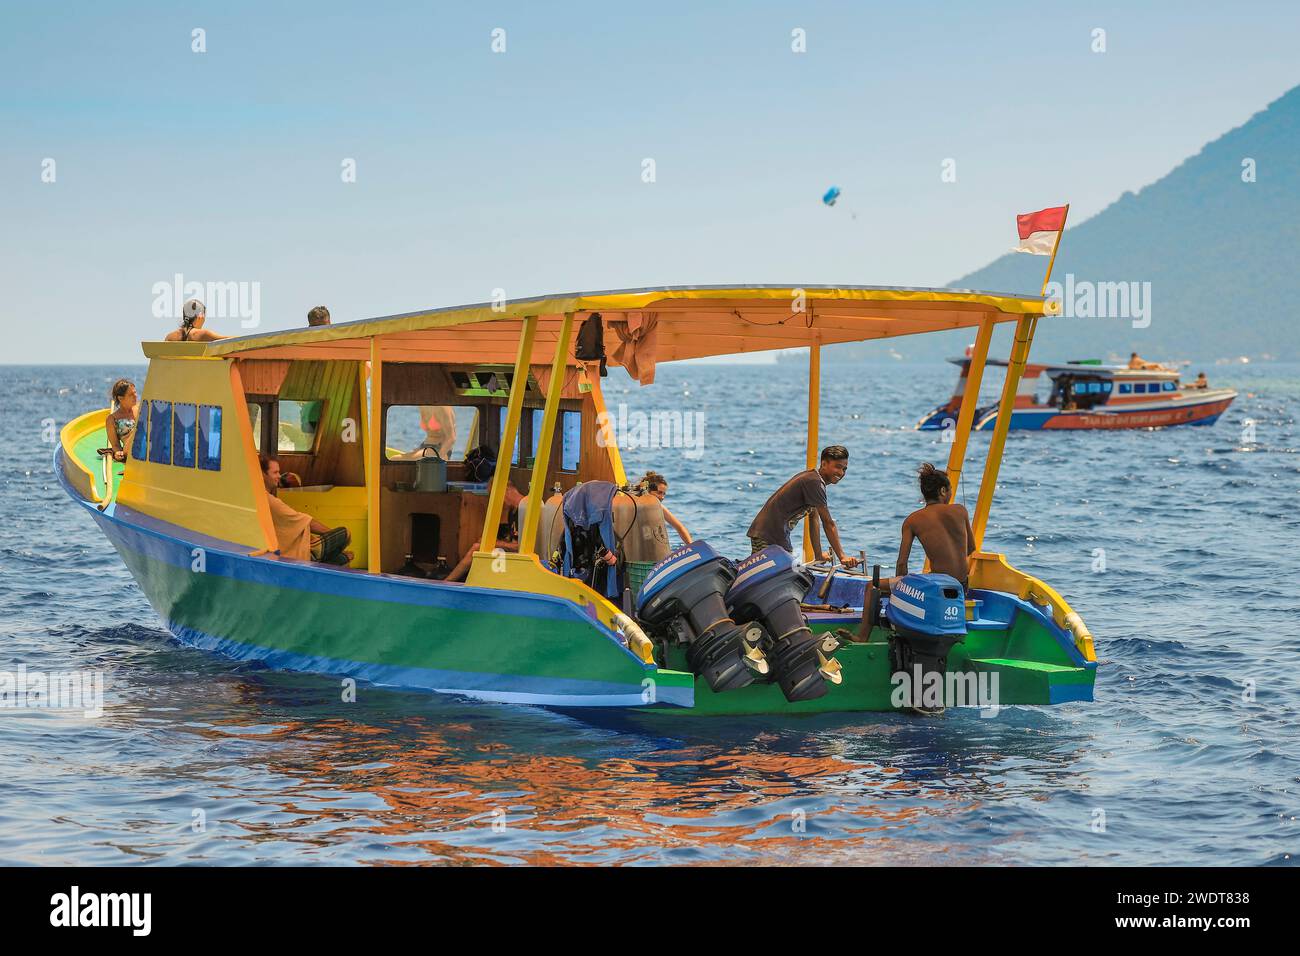 Tauchboot mit jungen ausländischen Touristen und Crew von Korallen gesäumten Urlaubs- und Tauchinsel, Bunaken, Nord-Sulawesi, Indonesien, Südostasien, Asien Stockfoto